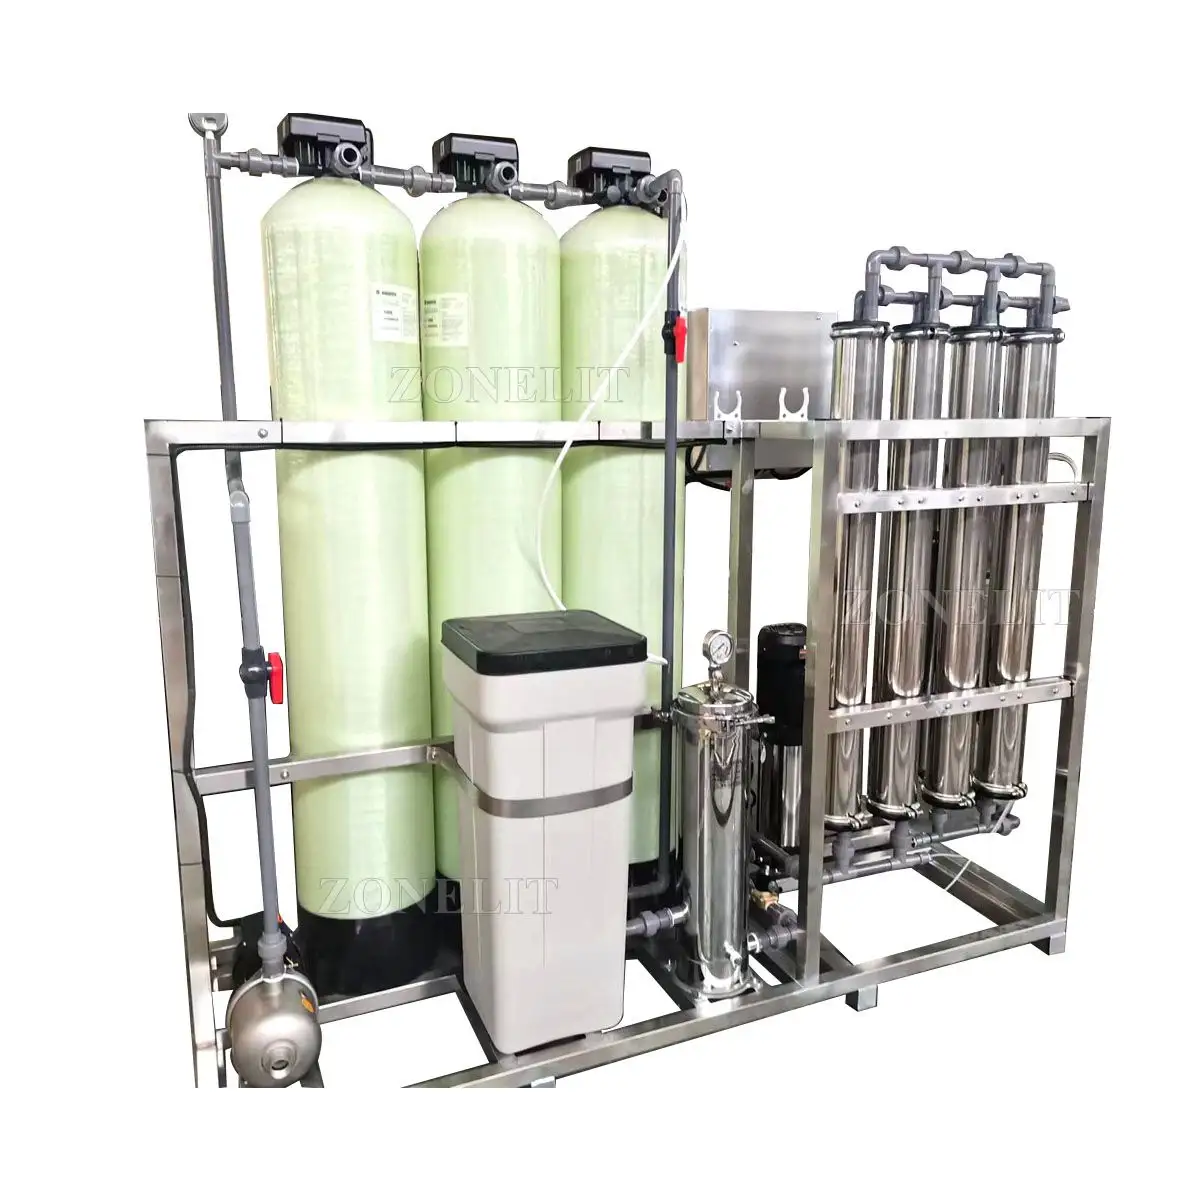 أنظمة تنقية المياه الصناعية التجارية ro بالتناضح العكسي مصنع معالجة المياه الصغير